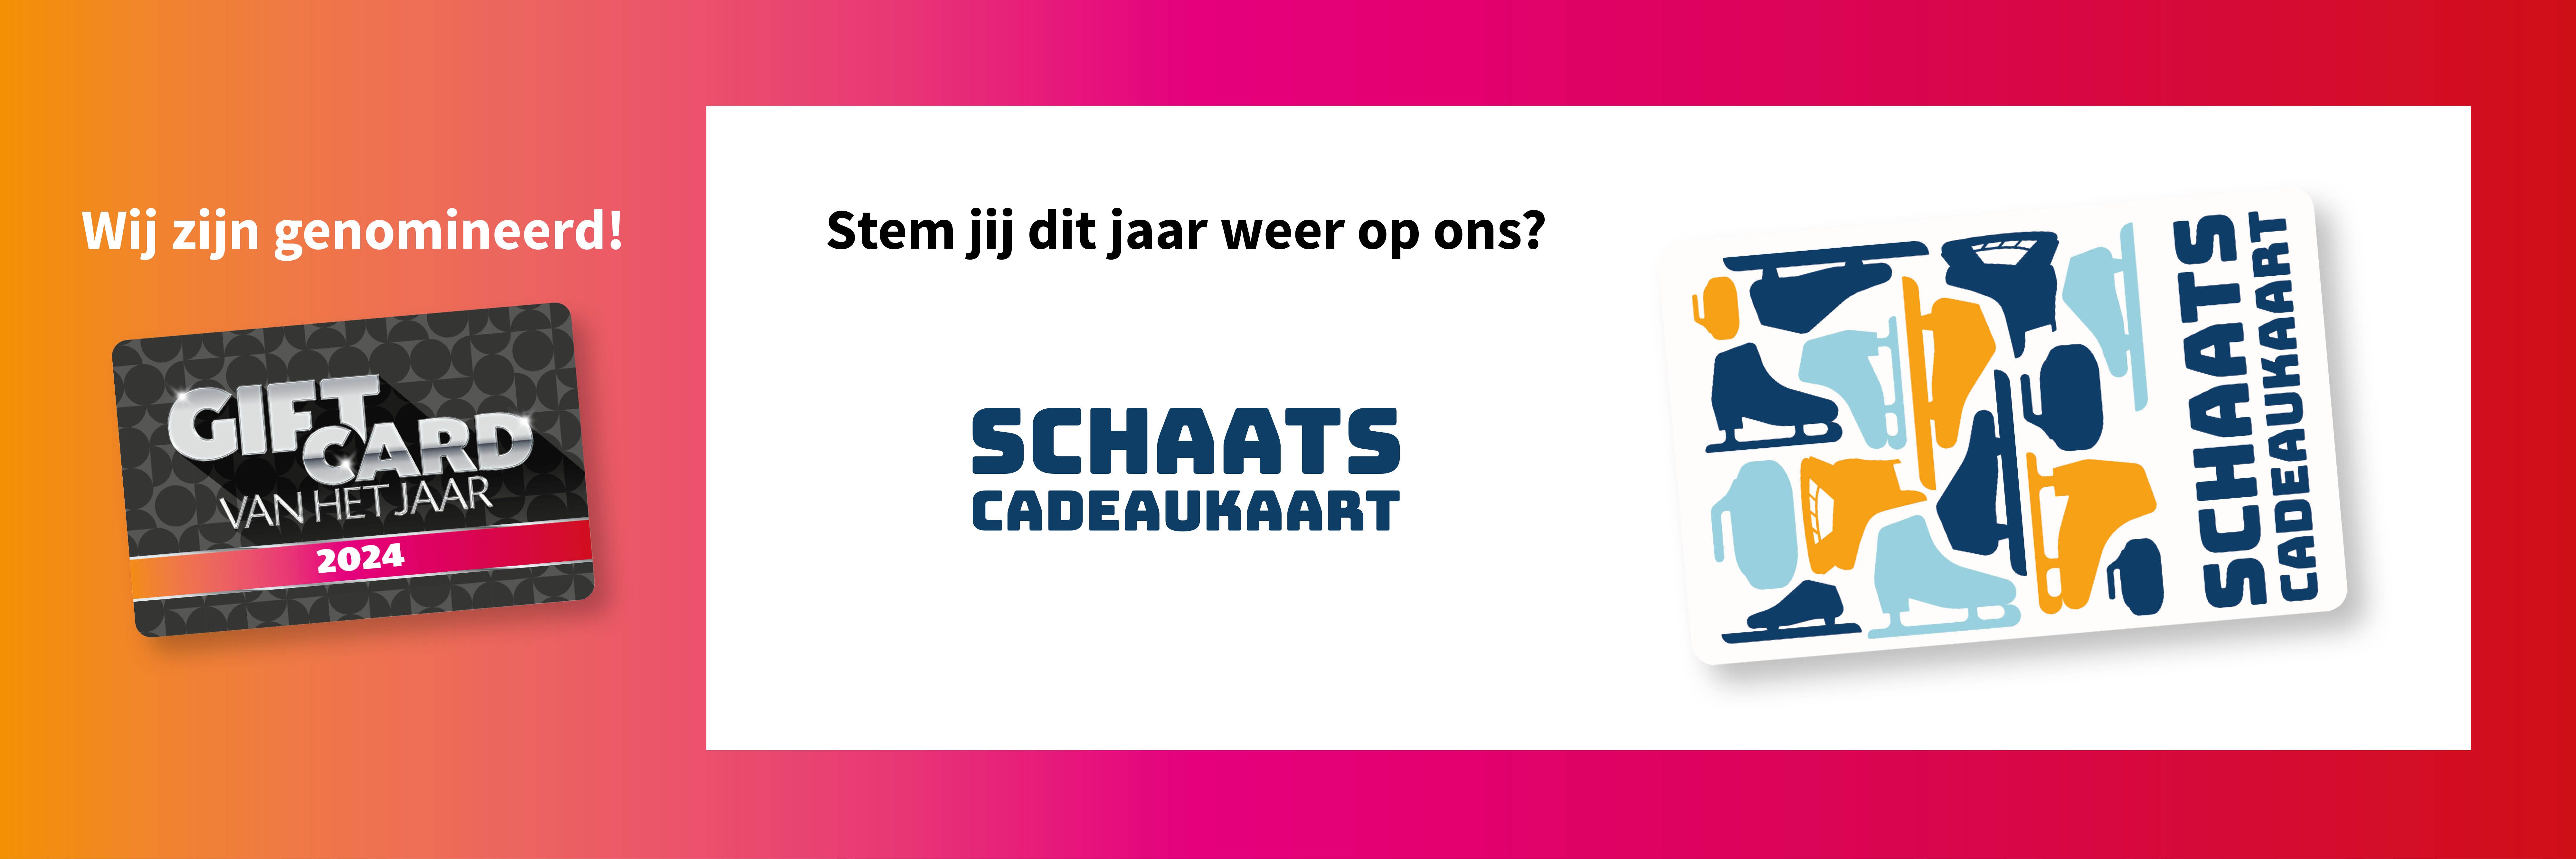 Schaats Cadeaukaart is genomineerd voor dé Giftcard van het Jaar 2024!